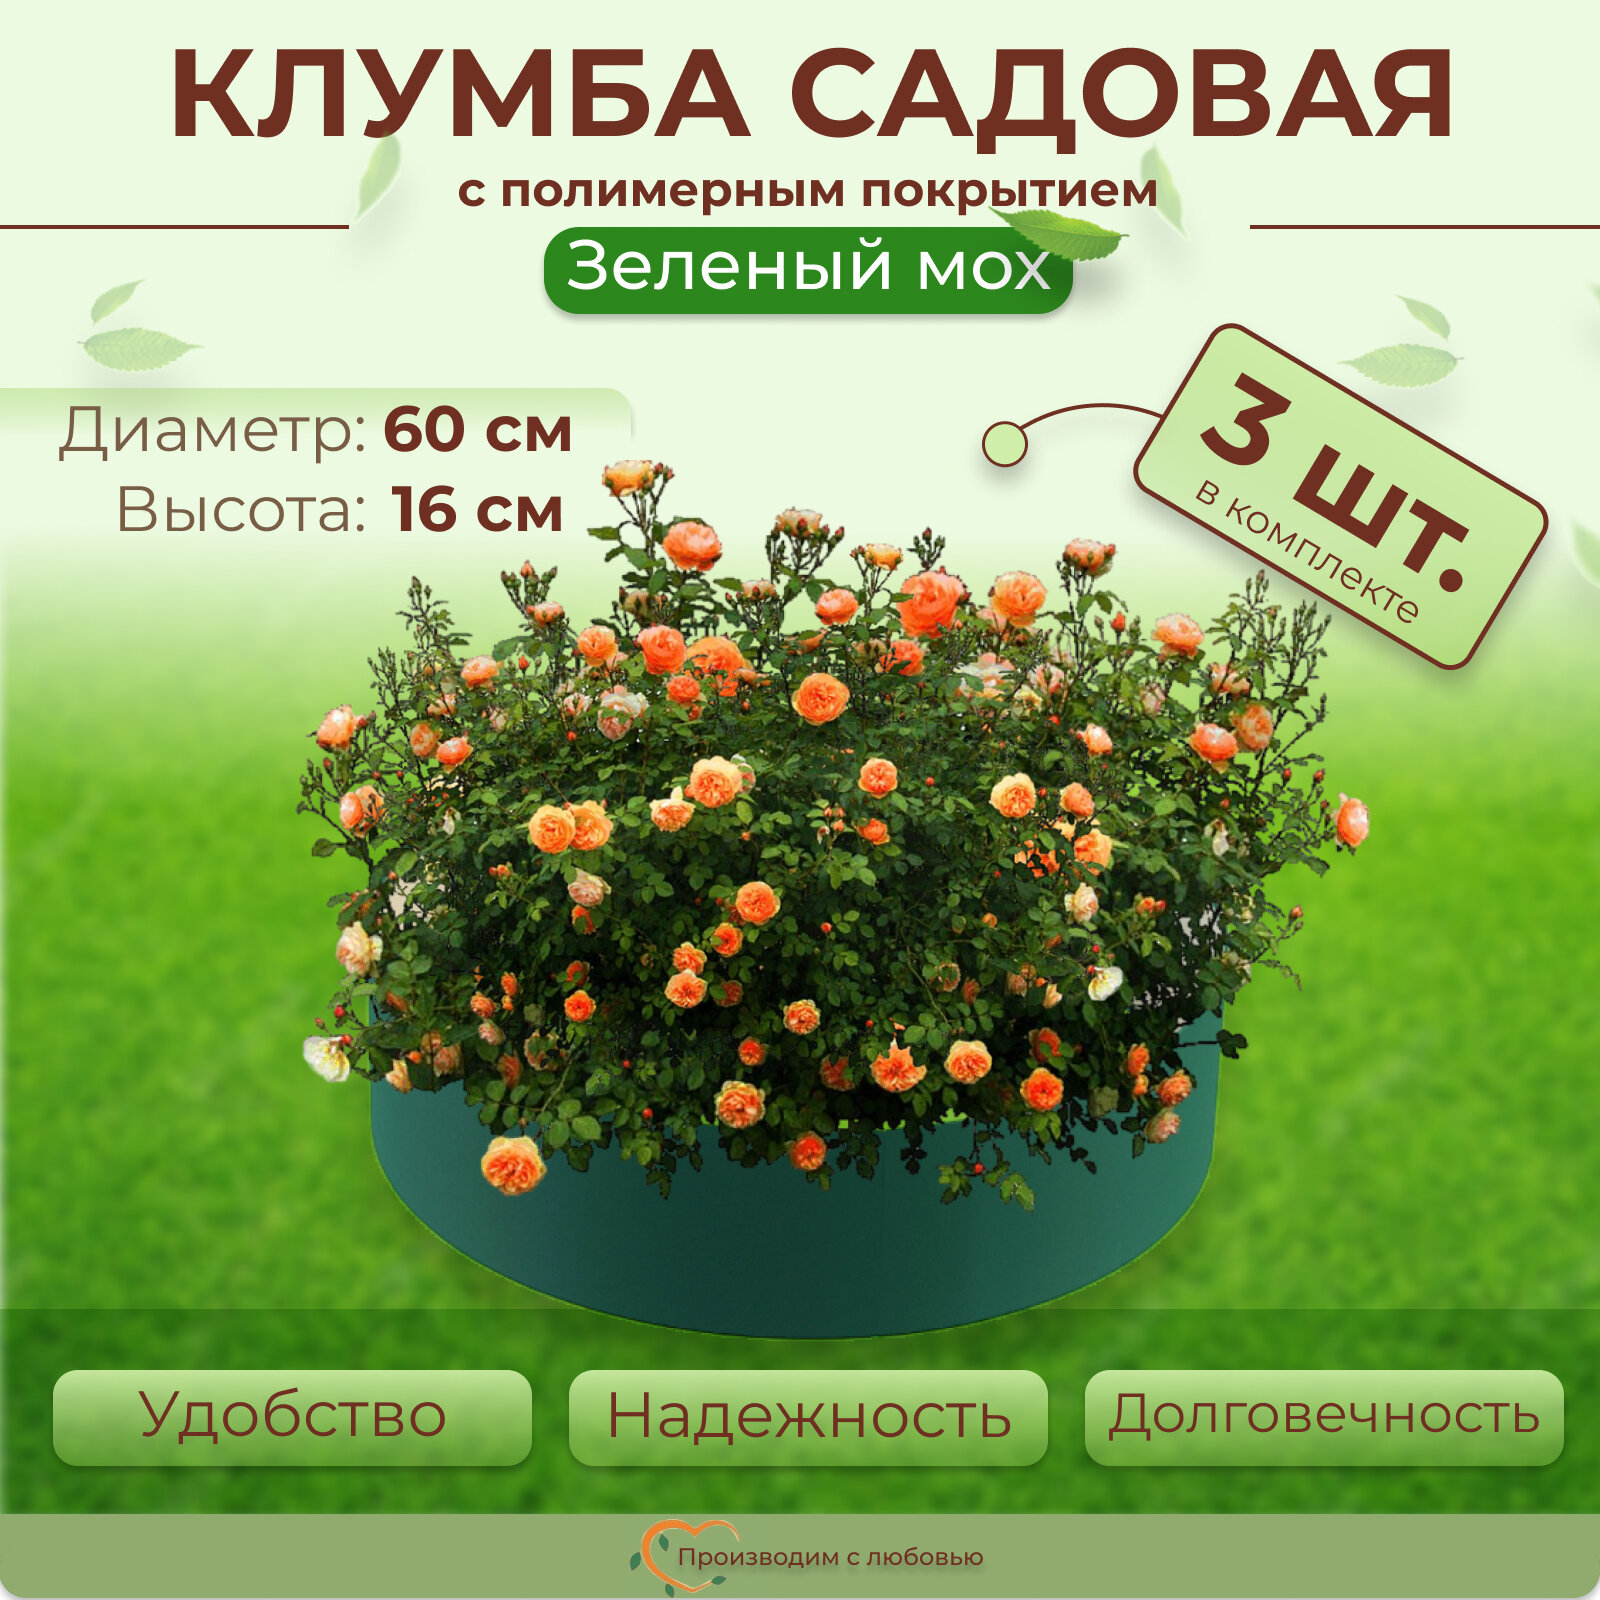 Клумба садовая для цветов с полимерным покрытием, цвет Зеленый мох, диаметр 60 см - 3 шт.